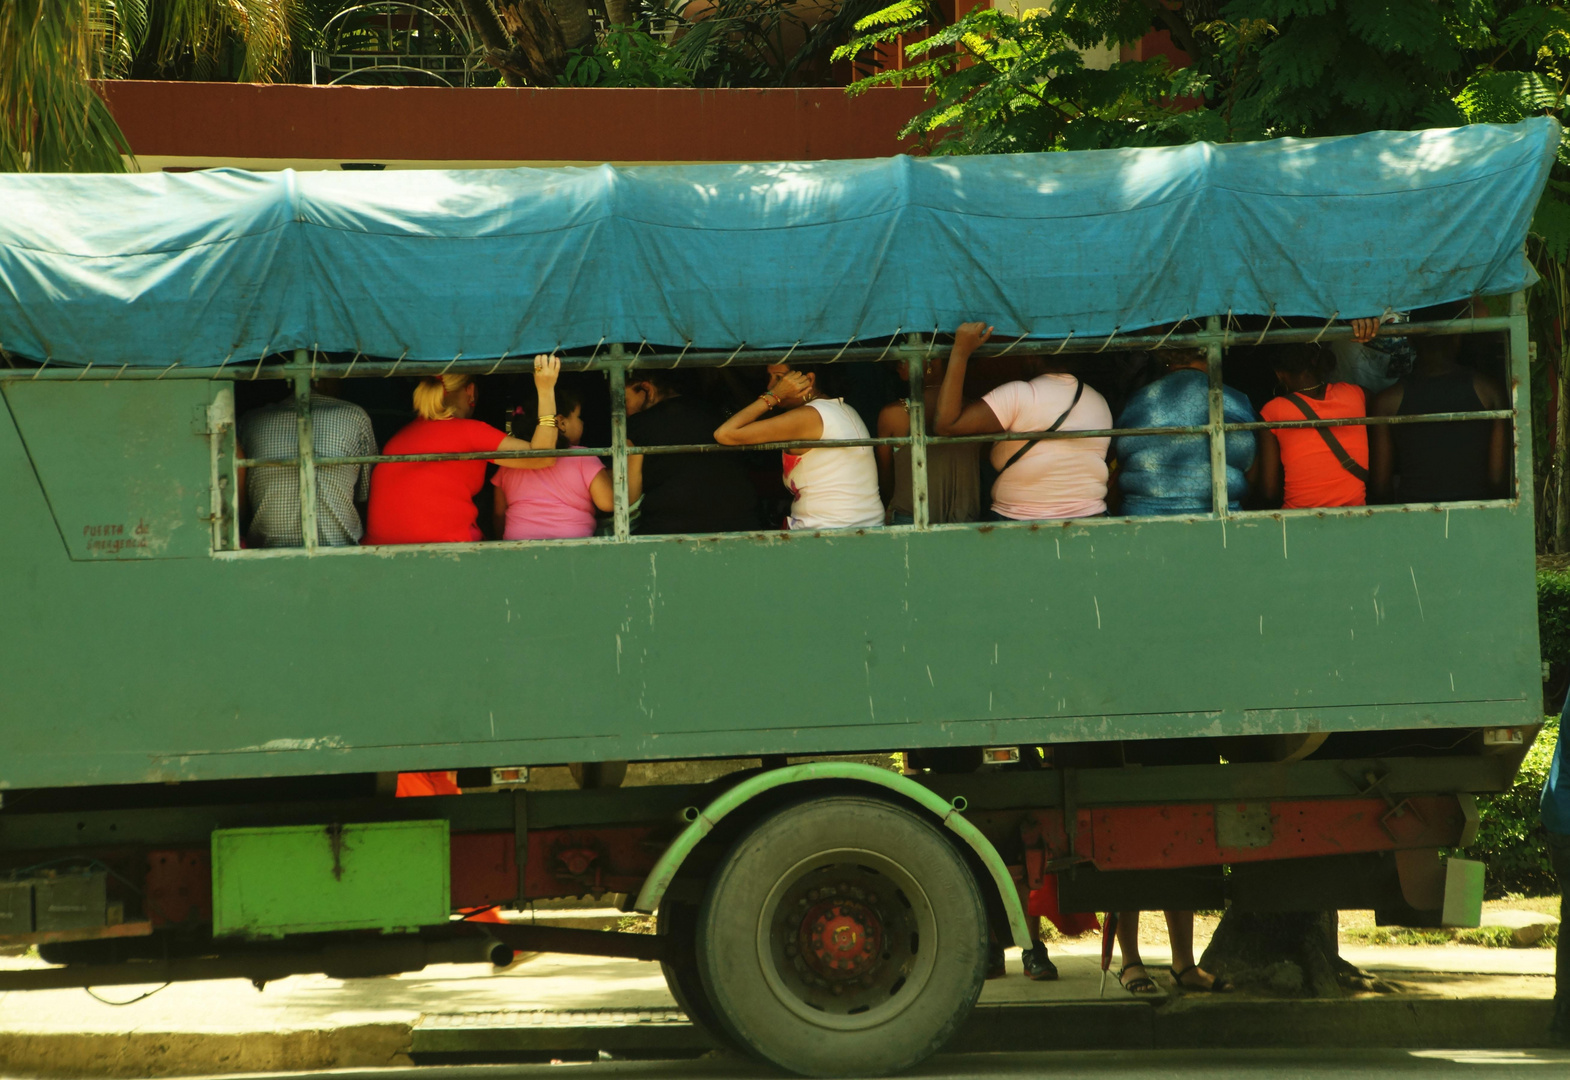 Public transport in Santiago de Cuba